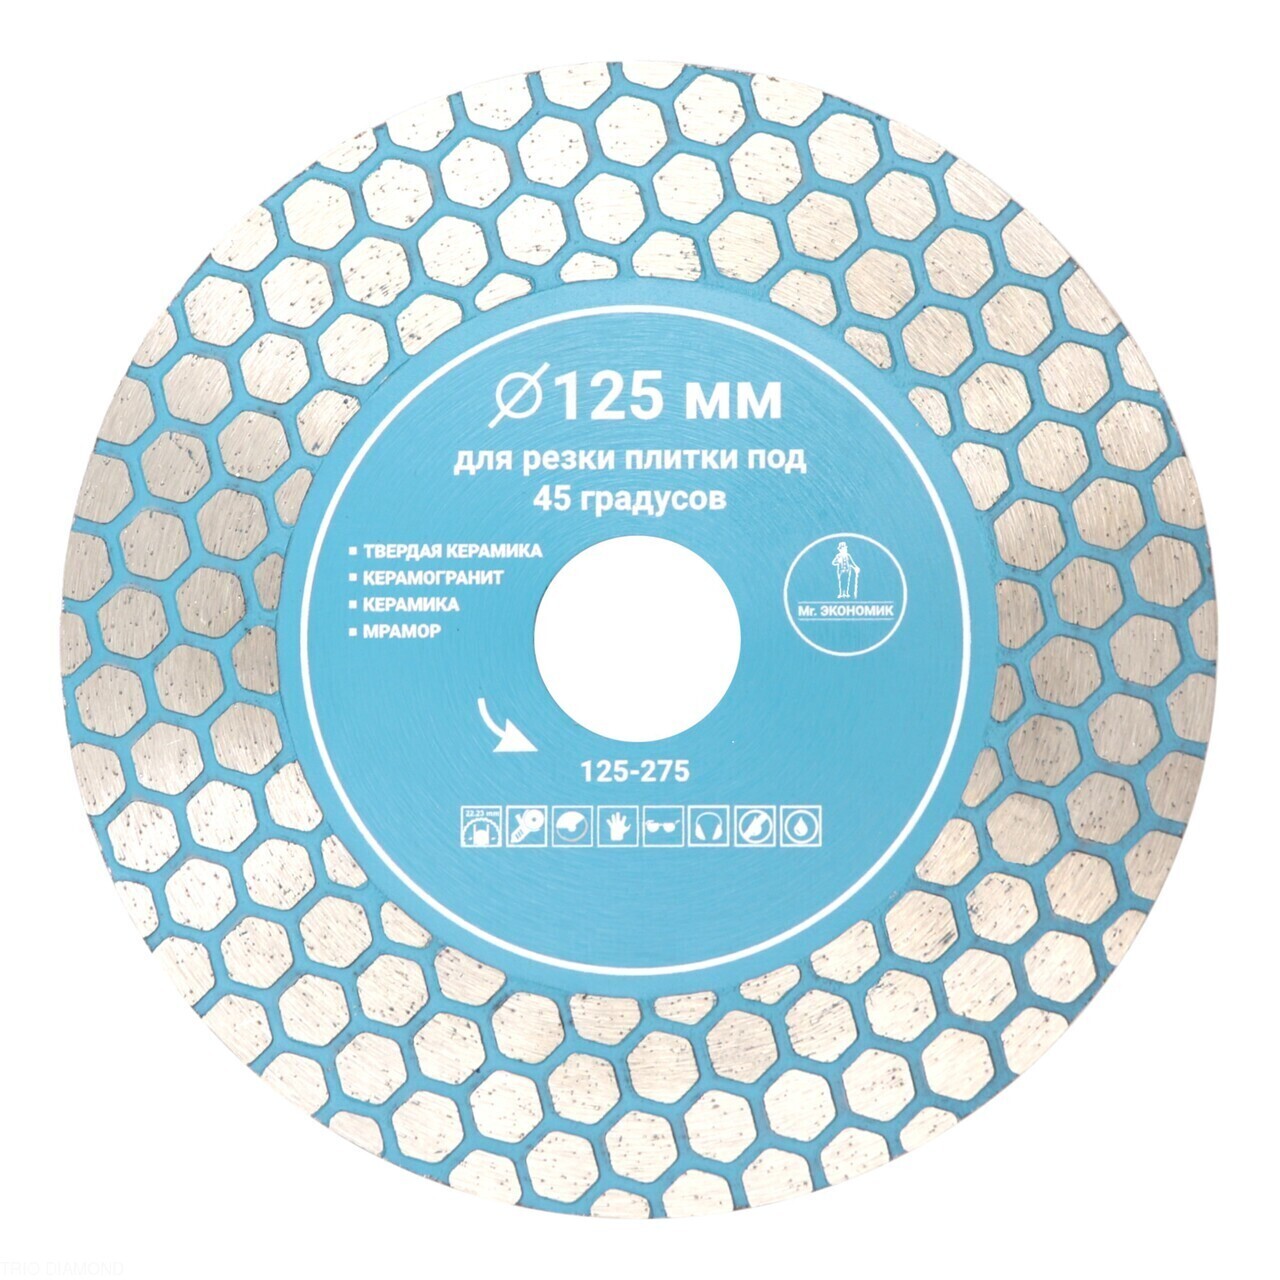 Алмазный диск Mr. ЭКОНОМИК для резки плитки 125 мм, артикул 